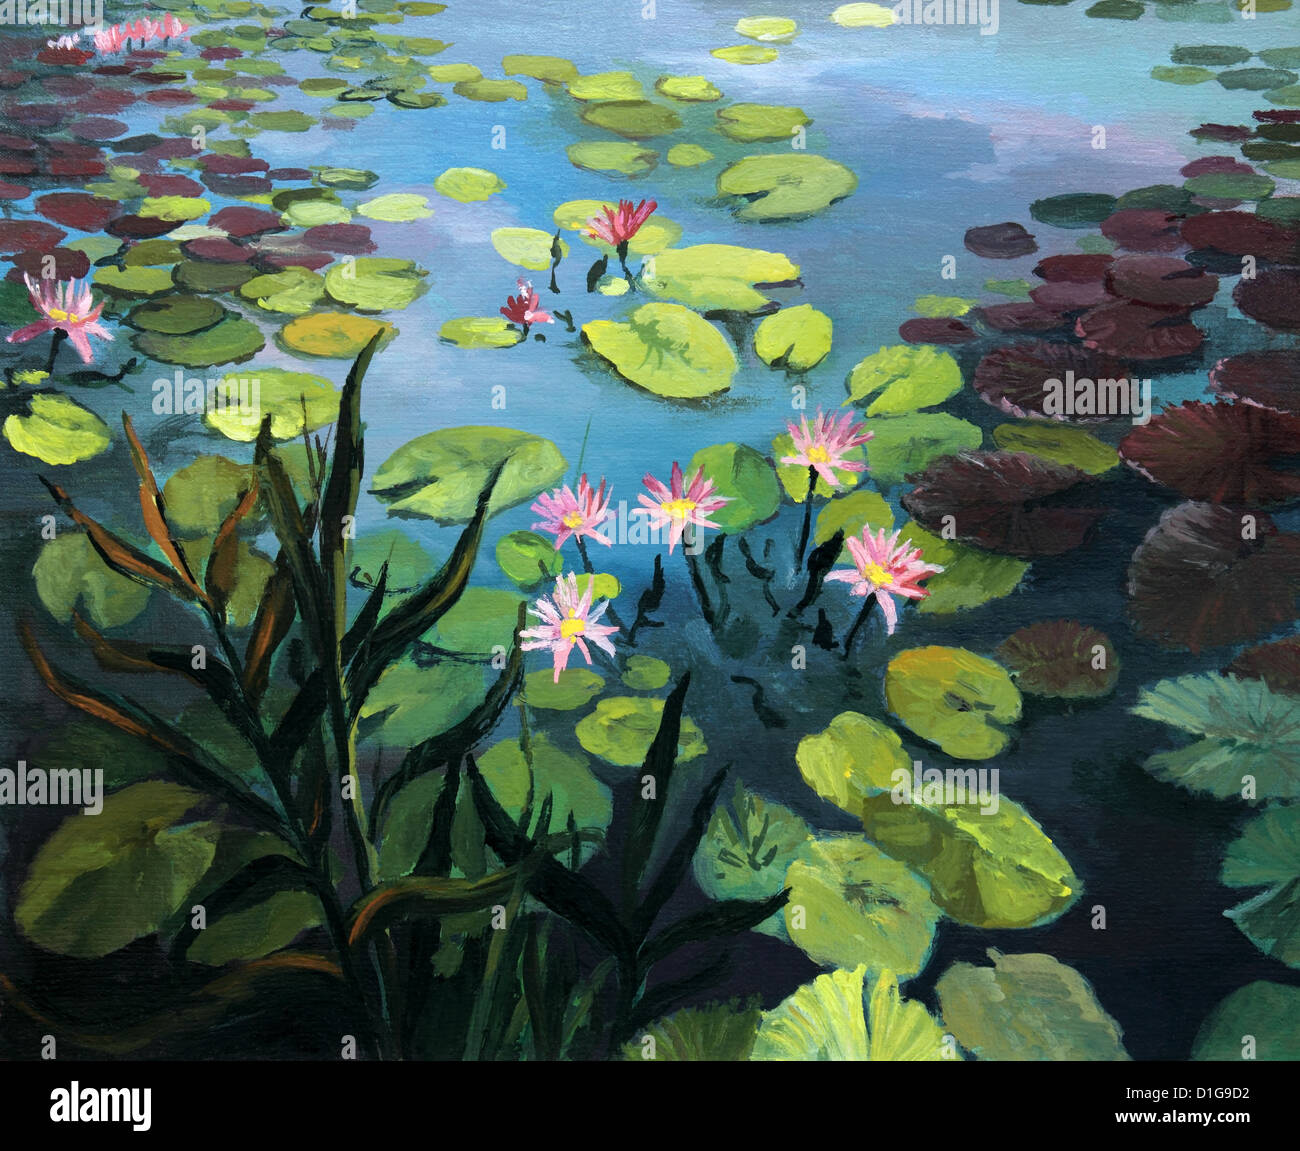 Un dipinto ad olio su tela di un laghetto colorato con splendidi fiori di loto e il riflesso del cielo sulla superficie dell'acqua. Foto Stock